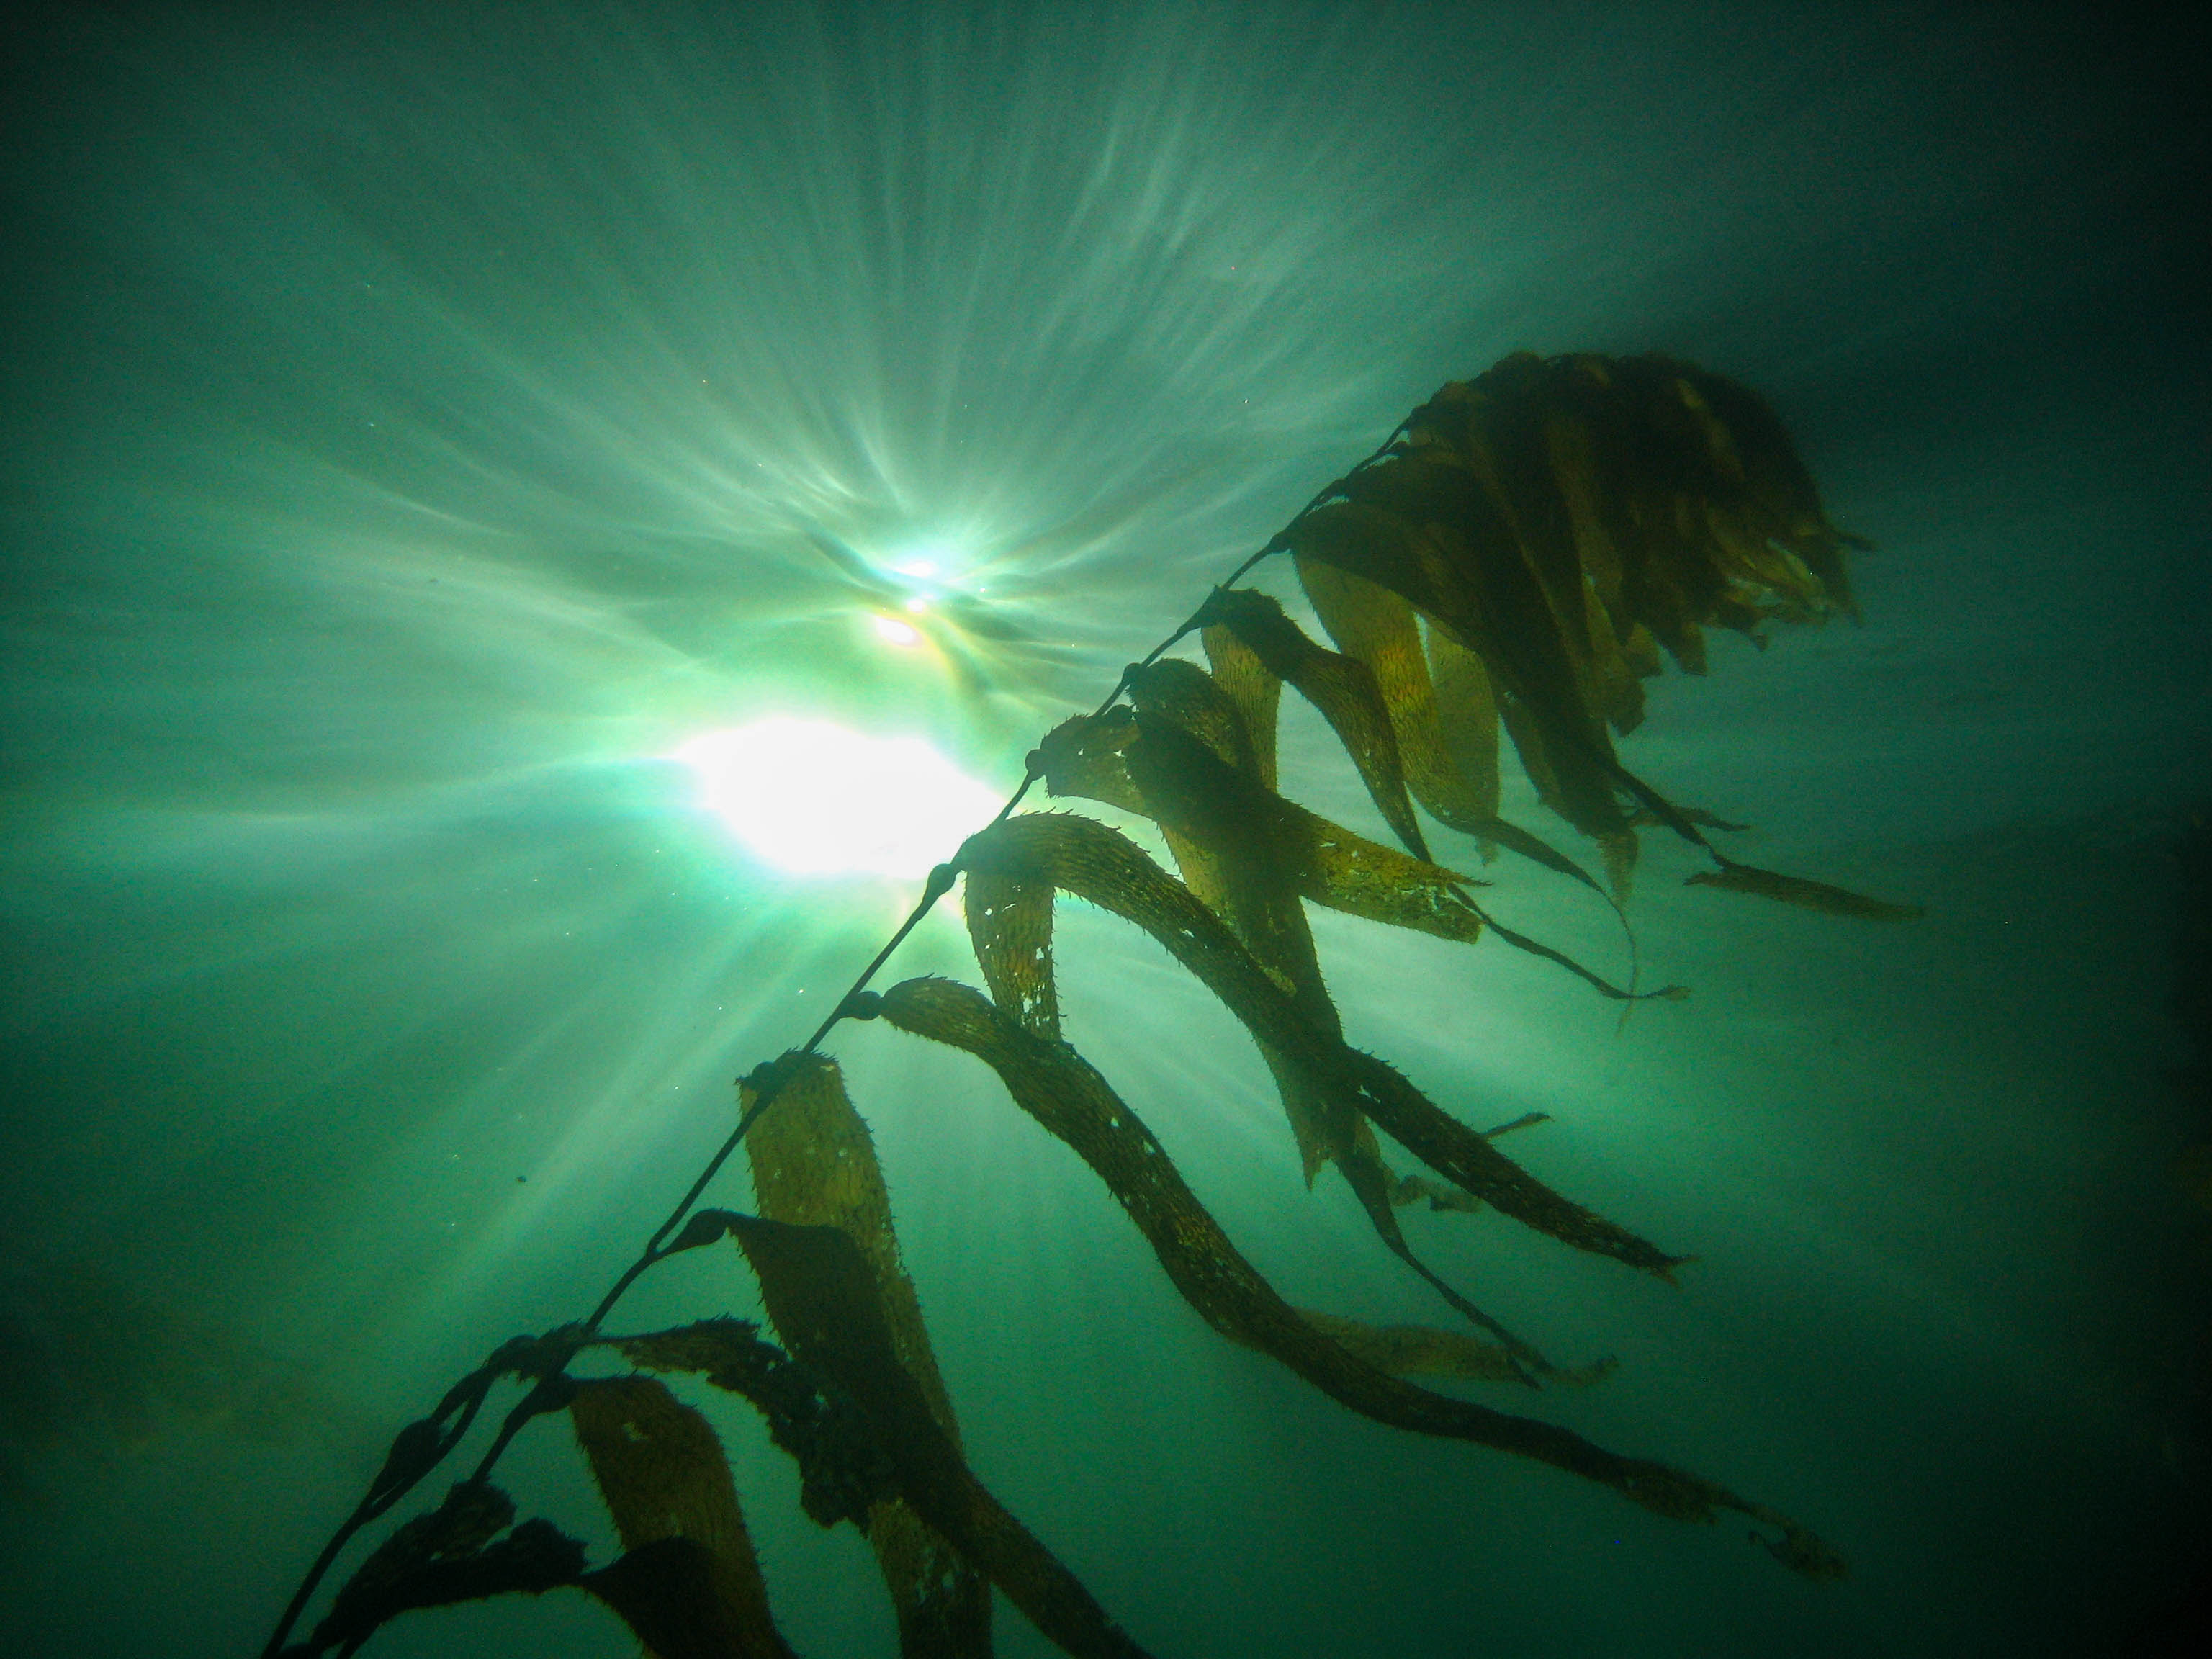 Giant kelp (Macrocystis pyrifera) growing in La Jolla, seen from below.